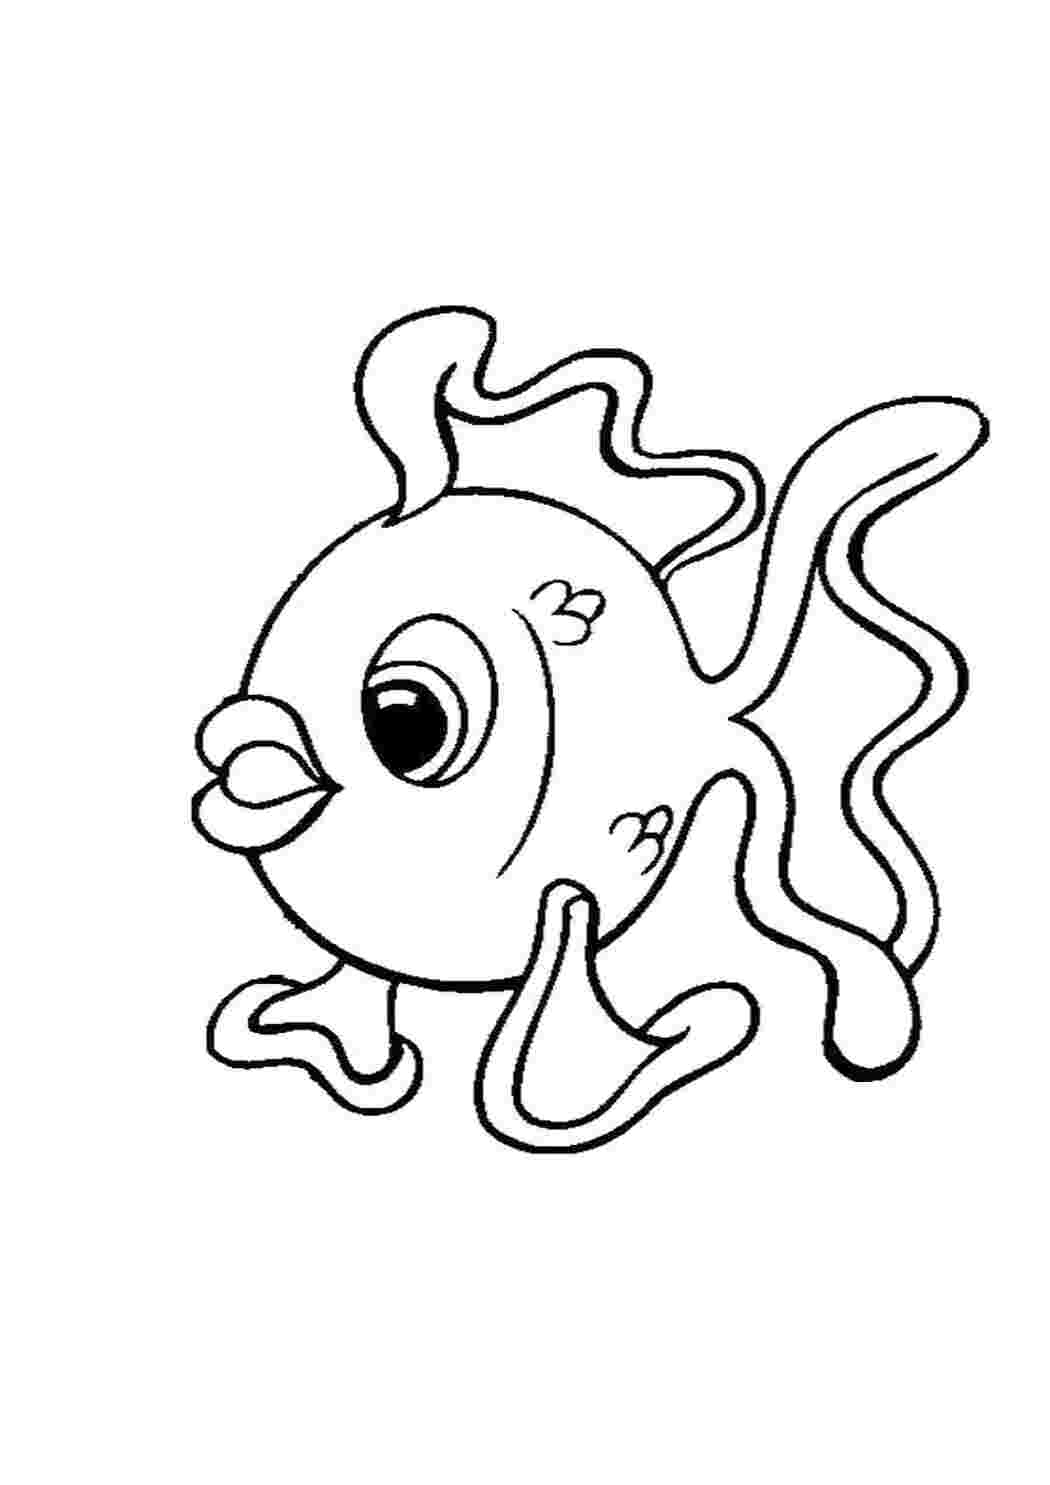 Раскраски рыбки для детей 3 4 лет. Золотая рыбка раскраска. Золотая рыбка раскраска для детей. Рыбка рисунок. Раскраска рыбка для детей 3-4 лет.